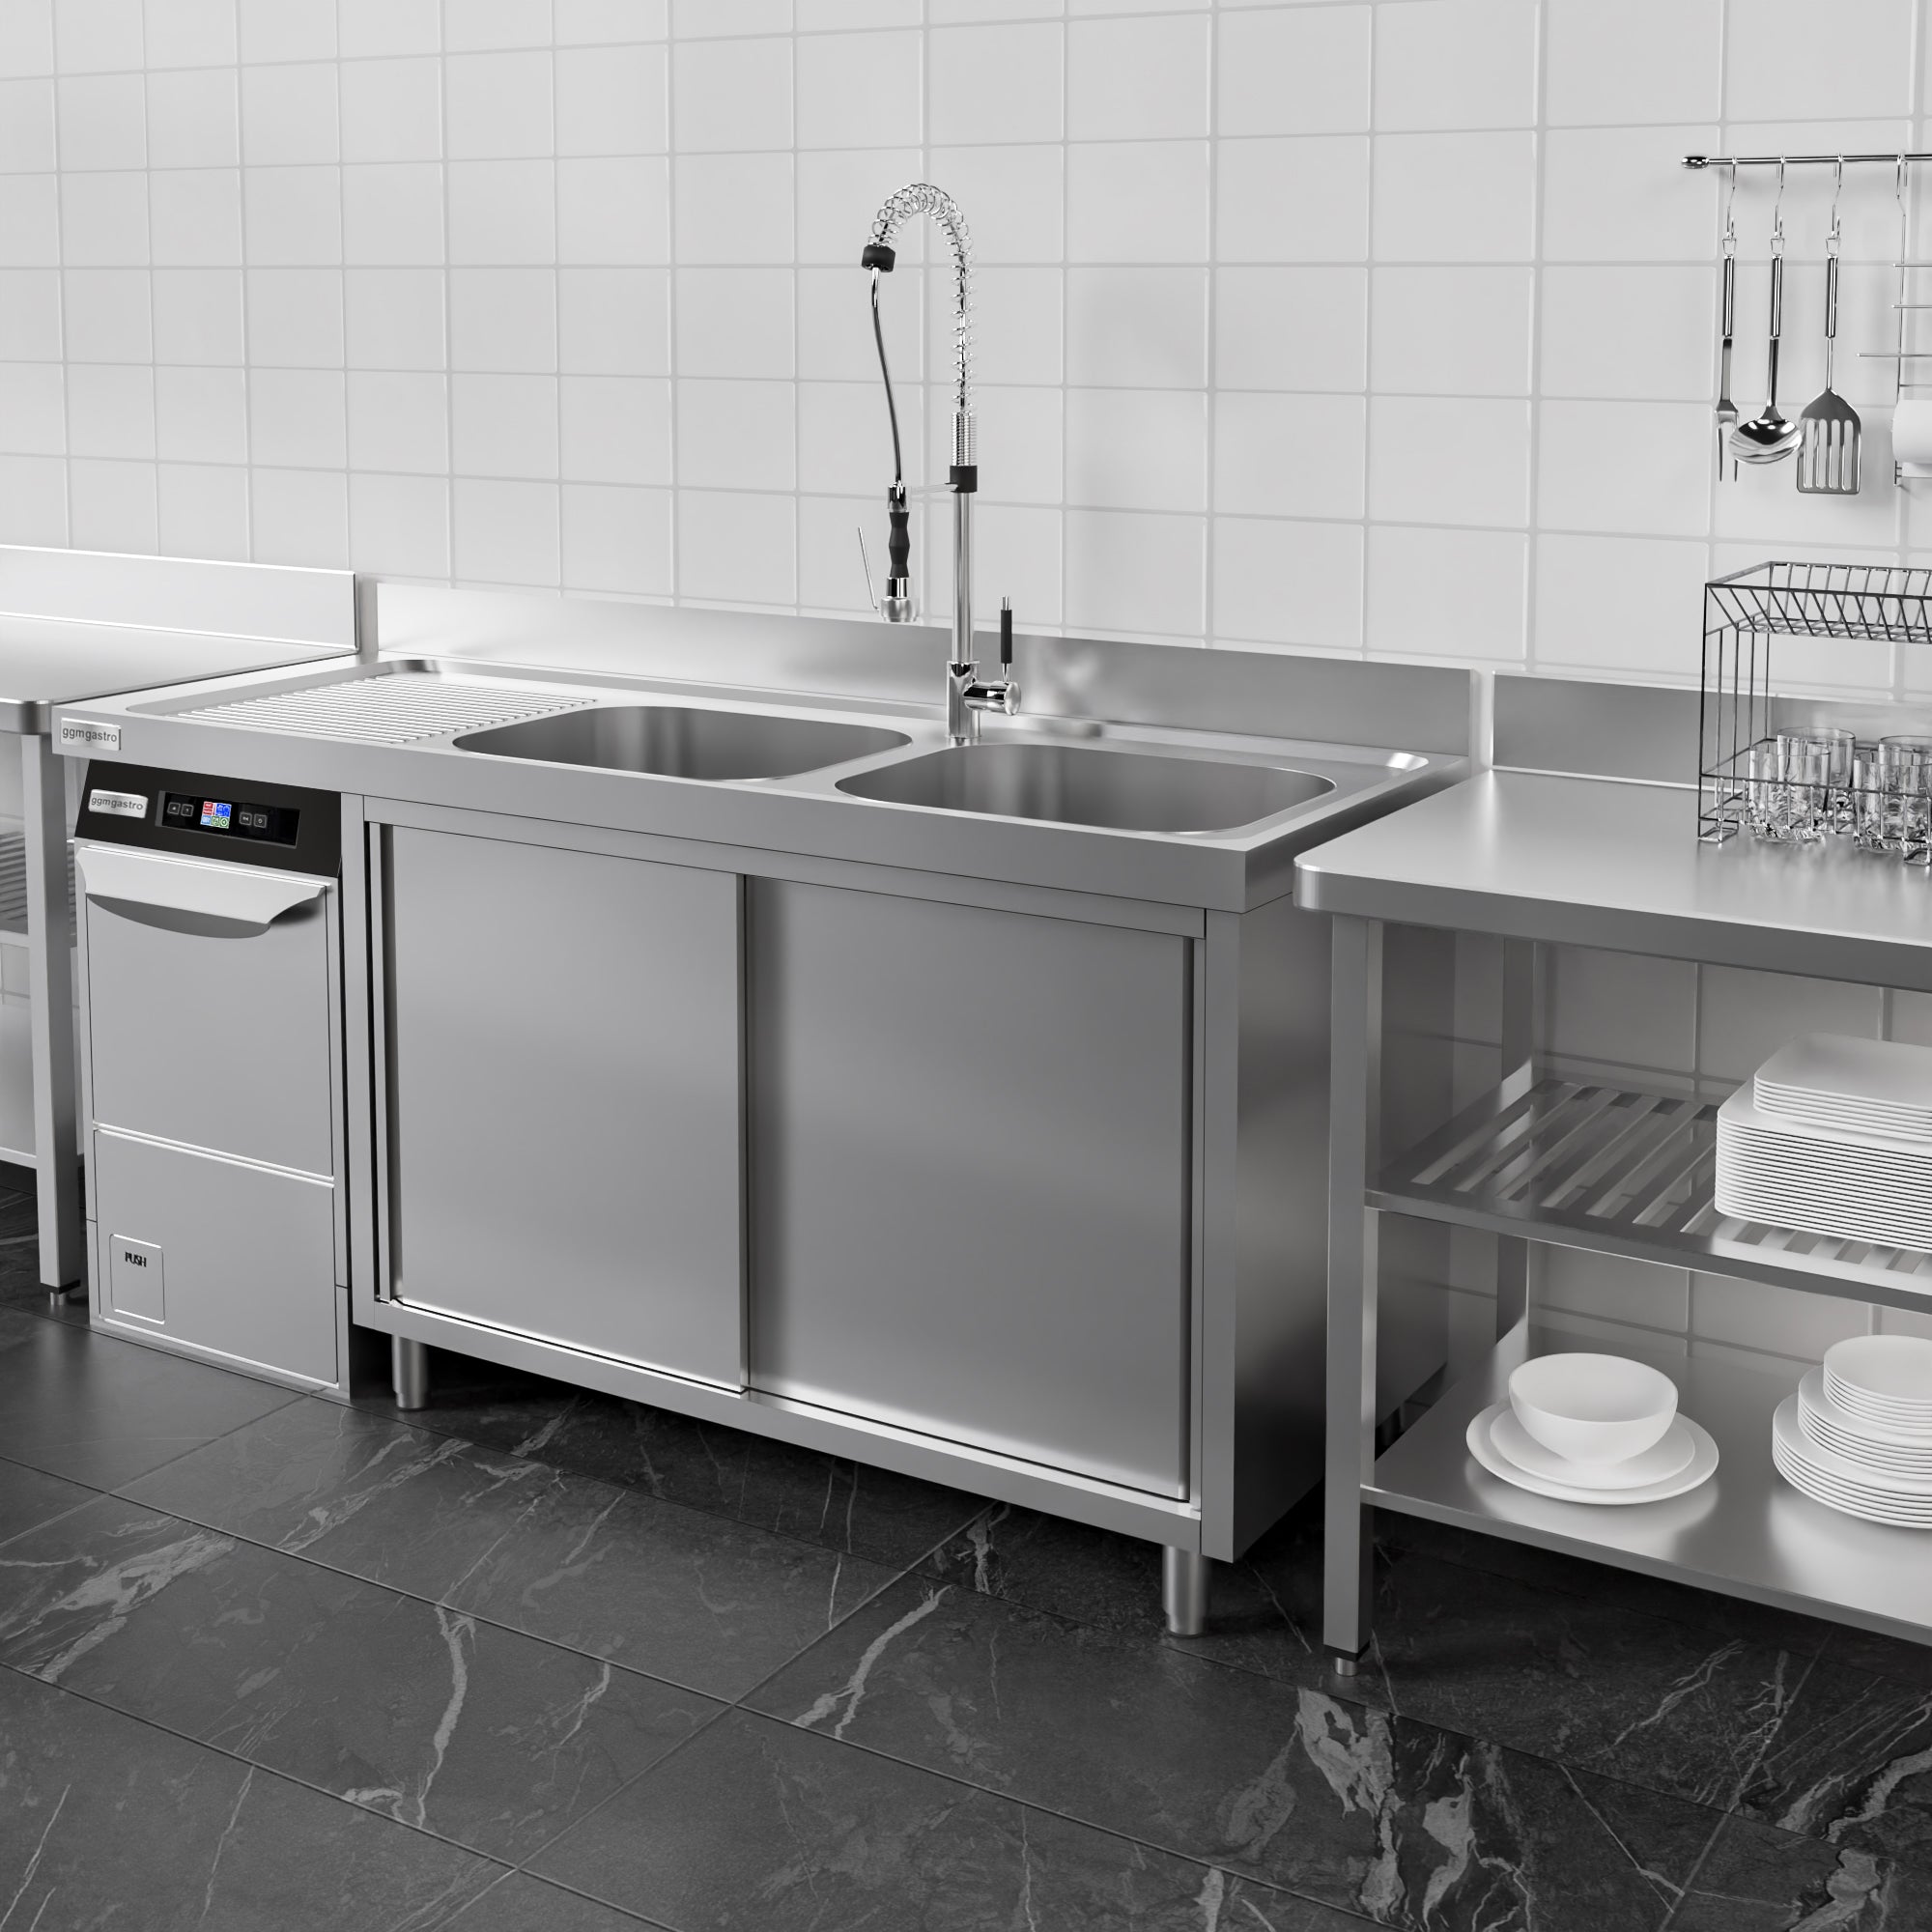 Vaskeskab med plads til opvaskemaskine 2,0m - 2 Vaske til Højre L 60 x B 50 x D 30 cm